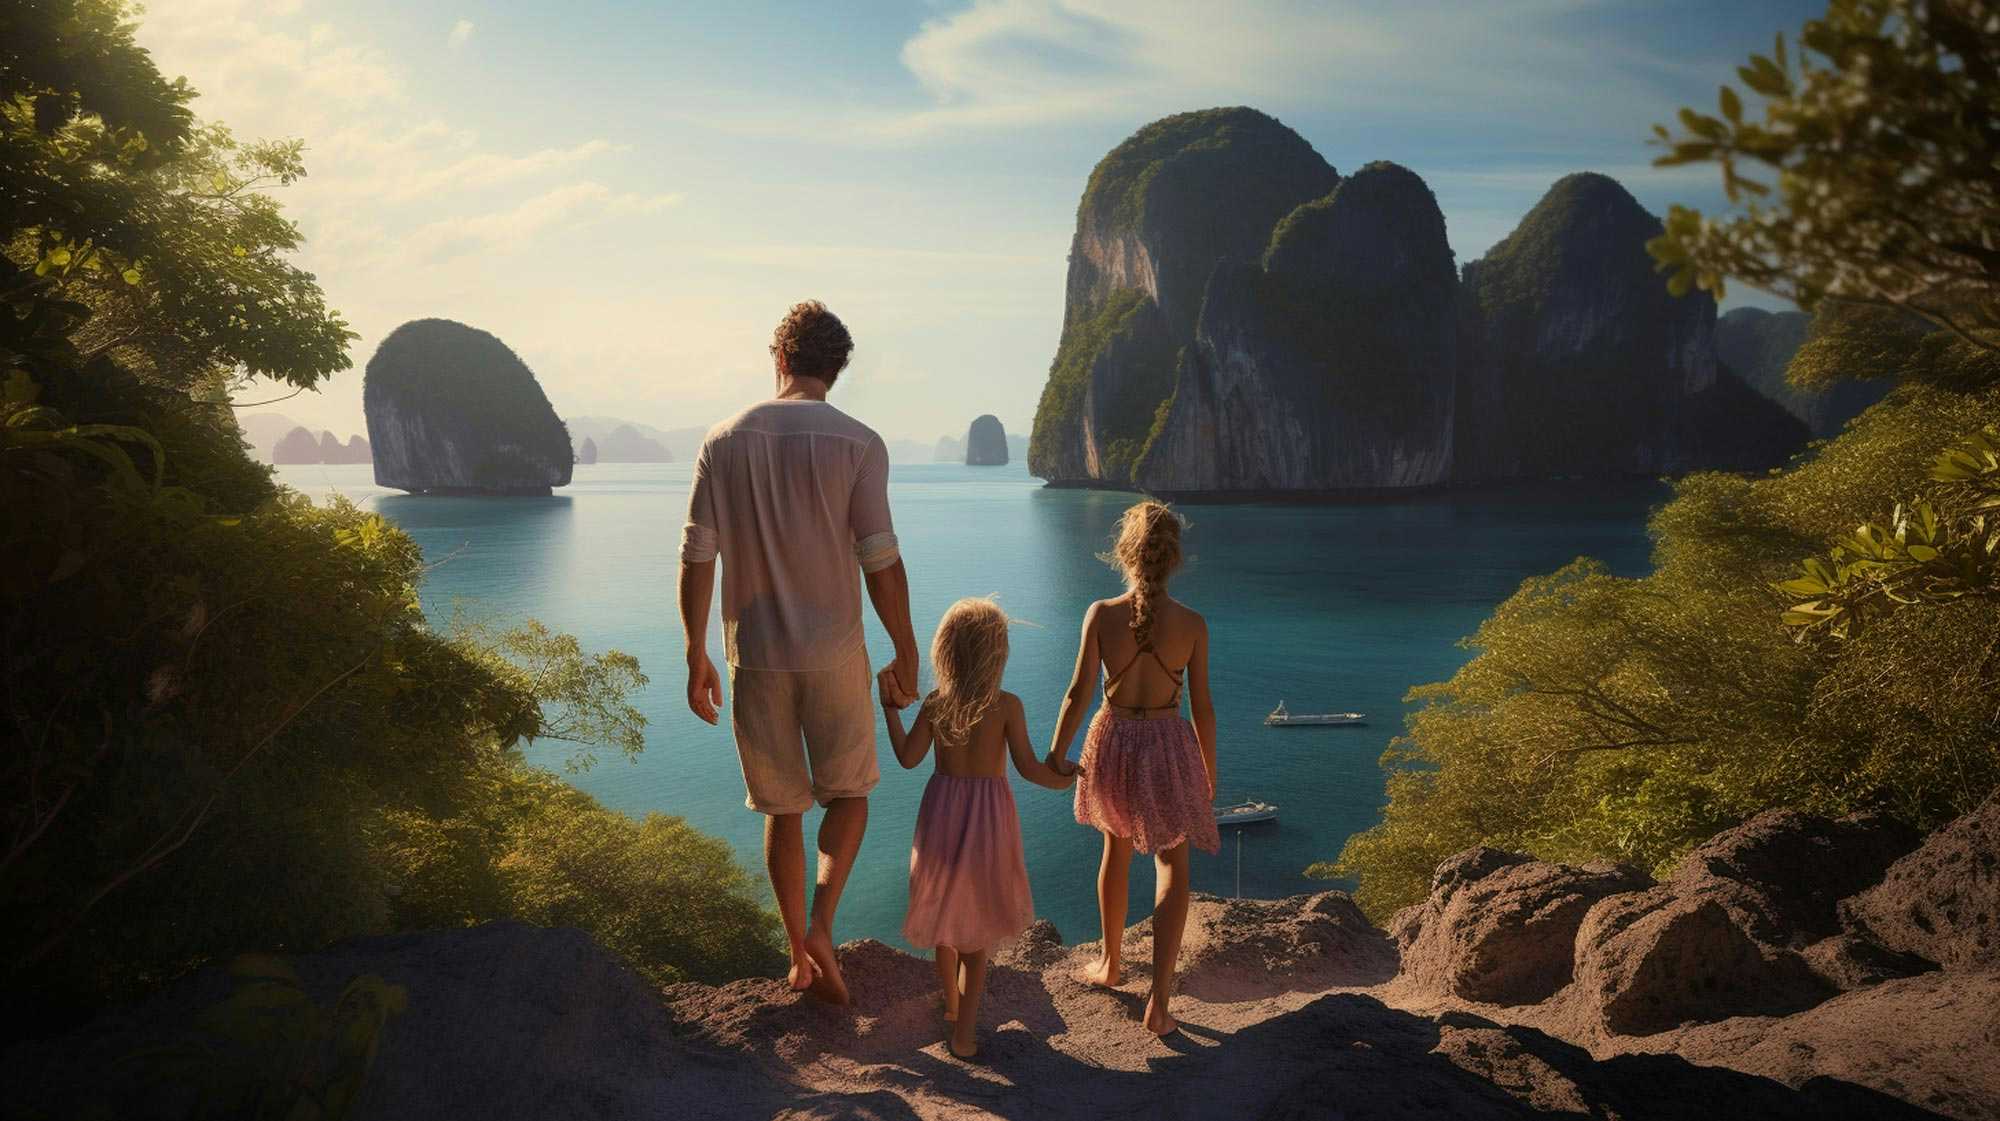 Waarom zou je in godsnaam als jonge vader met twee dochters alleen op een verre reis naar Thailand gaan?